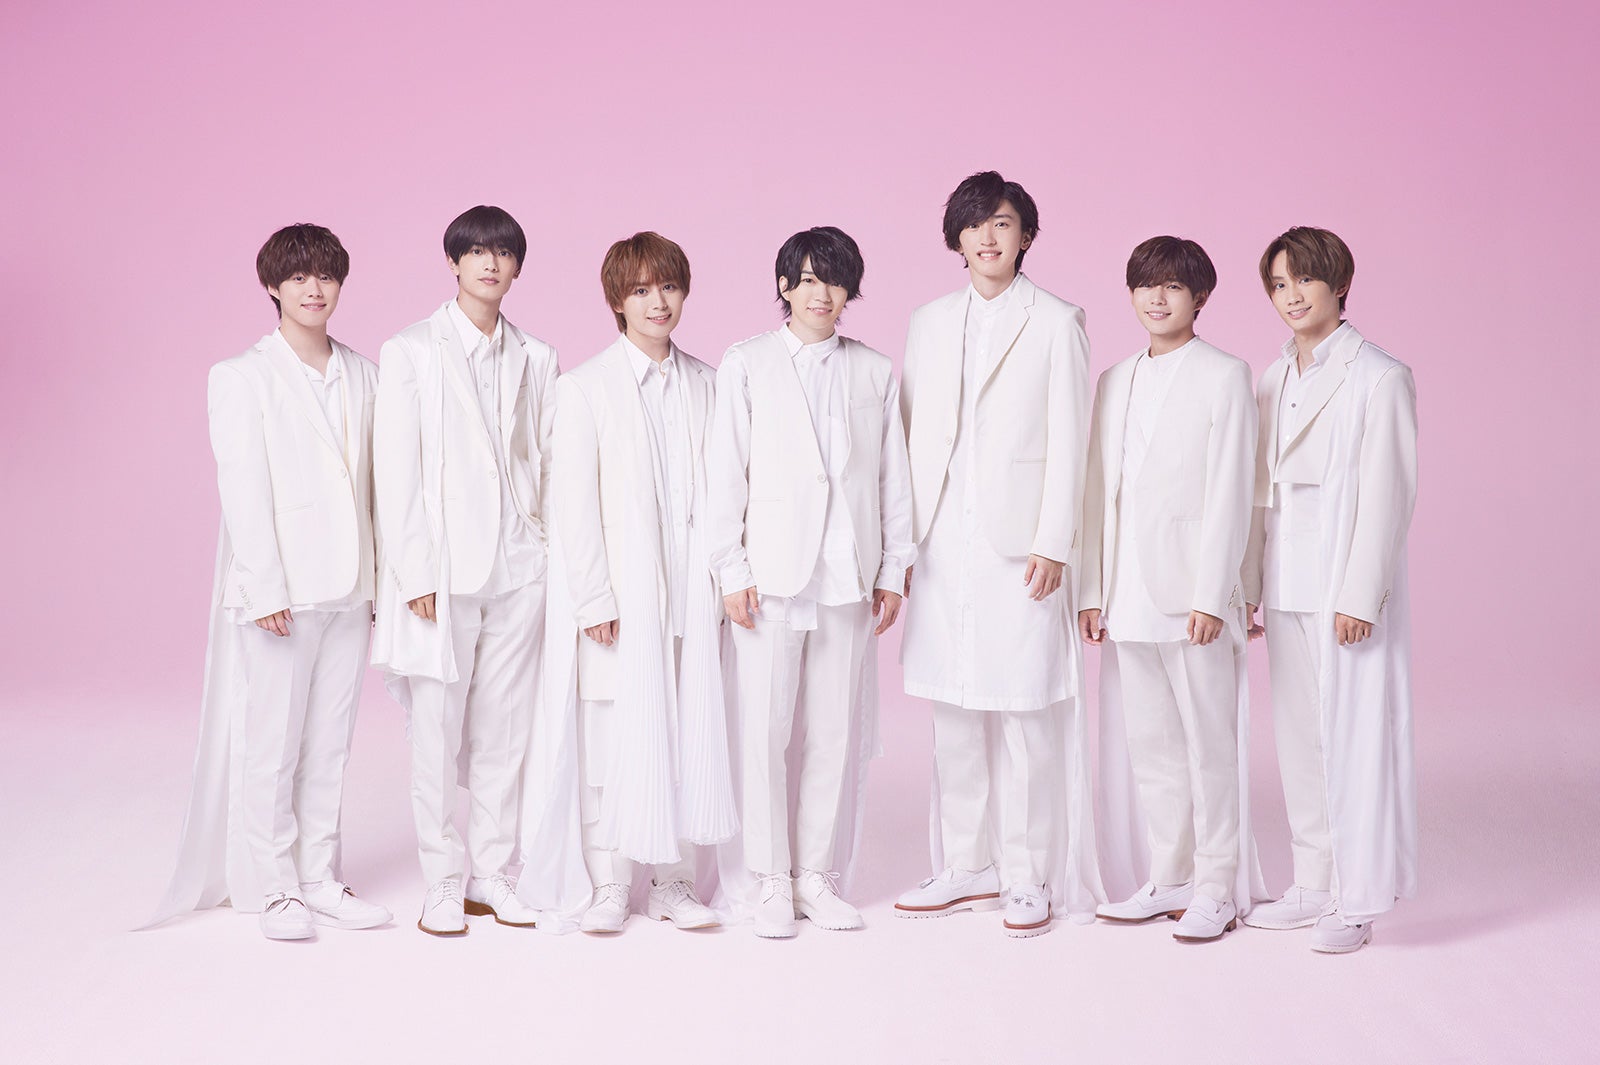 なにわ男子、初アルバム「1st Love」収録楽曲発表 関西Jr.時代の楽曲